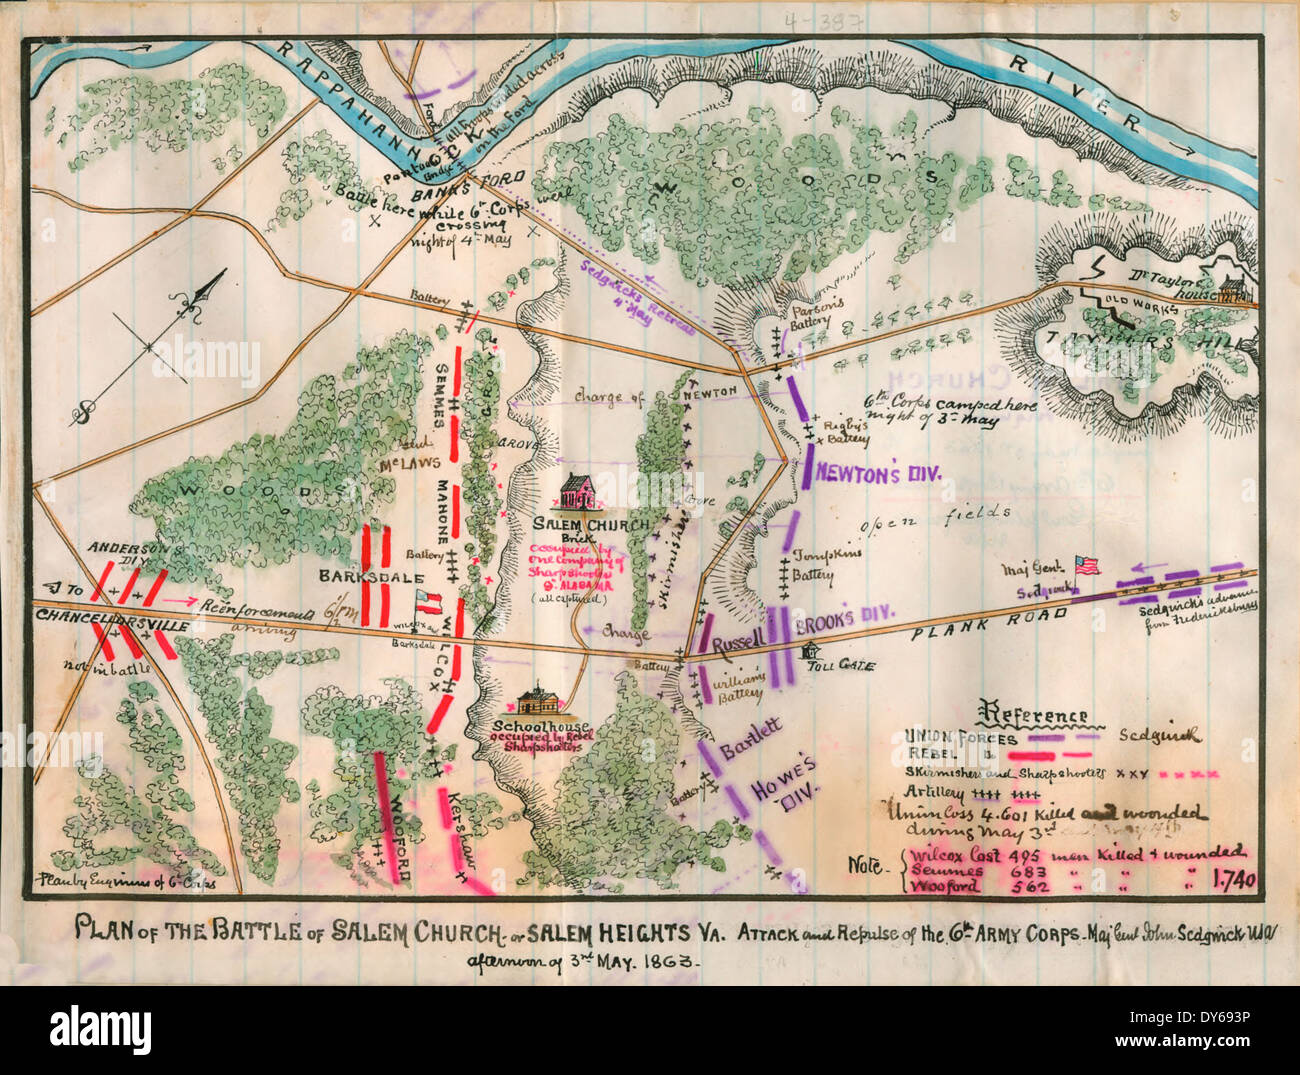 Plan der Schlacht von Salem Church oder Salem Höhen, Virginia Angriff und Repulse der 6. Armee-Korps, Generalmajor John Sedgwick, Vereinigte Staaten von Amerika, am Nachmittag des 3. Mai 1863. USA Bürgerkrieg Stockfoto